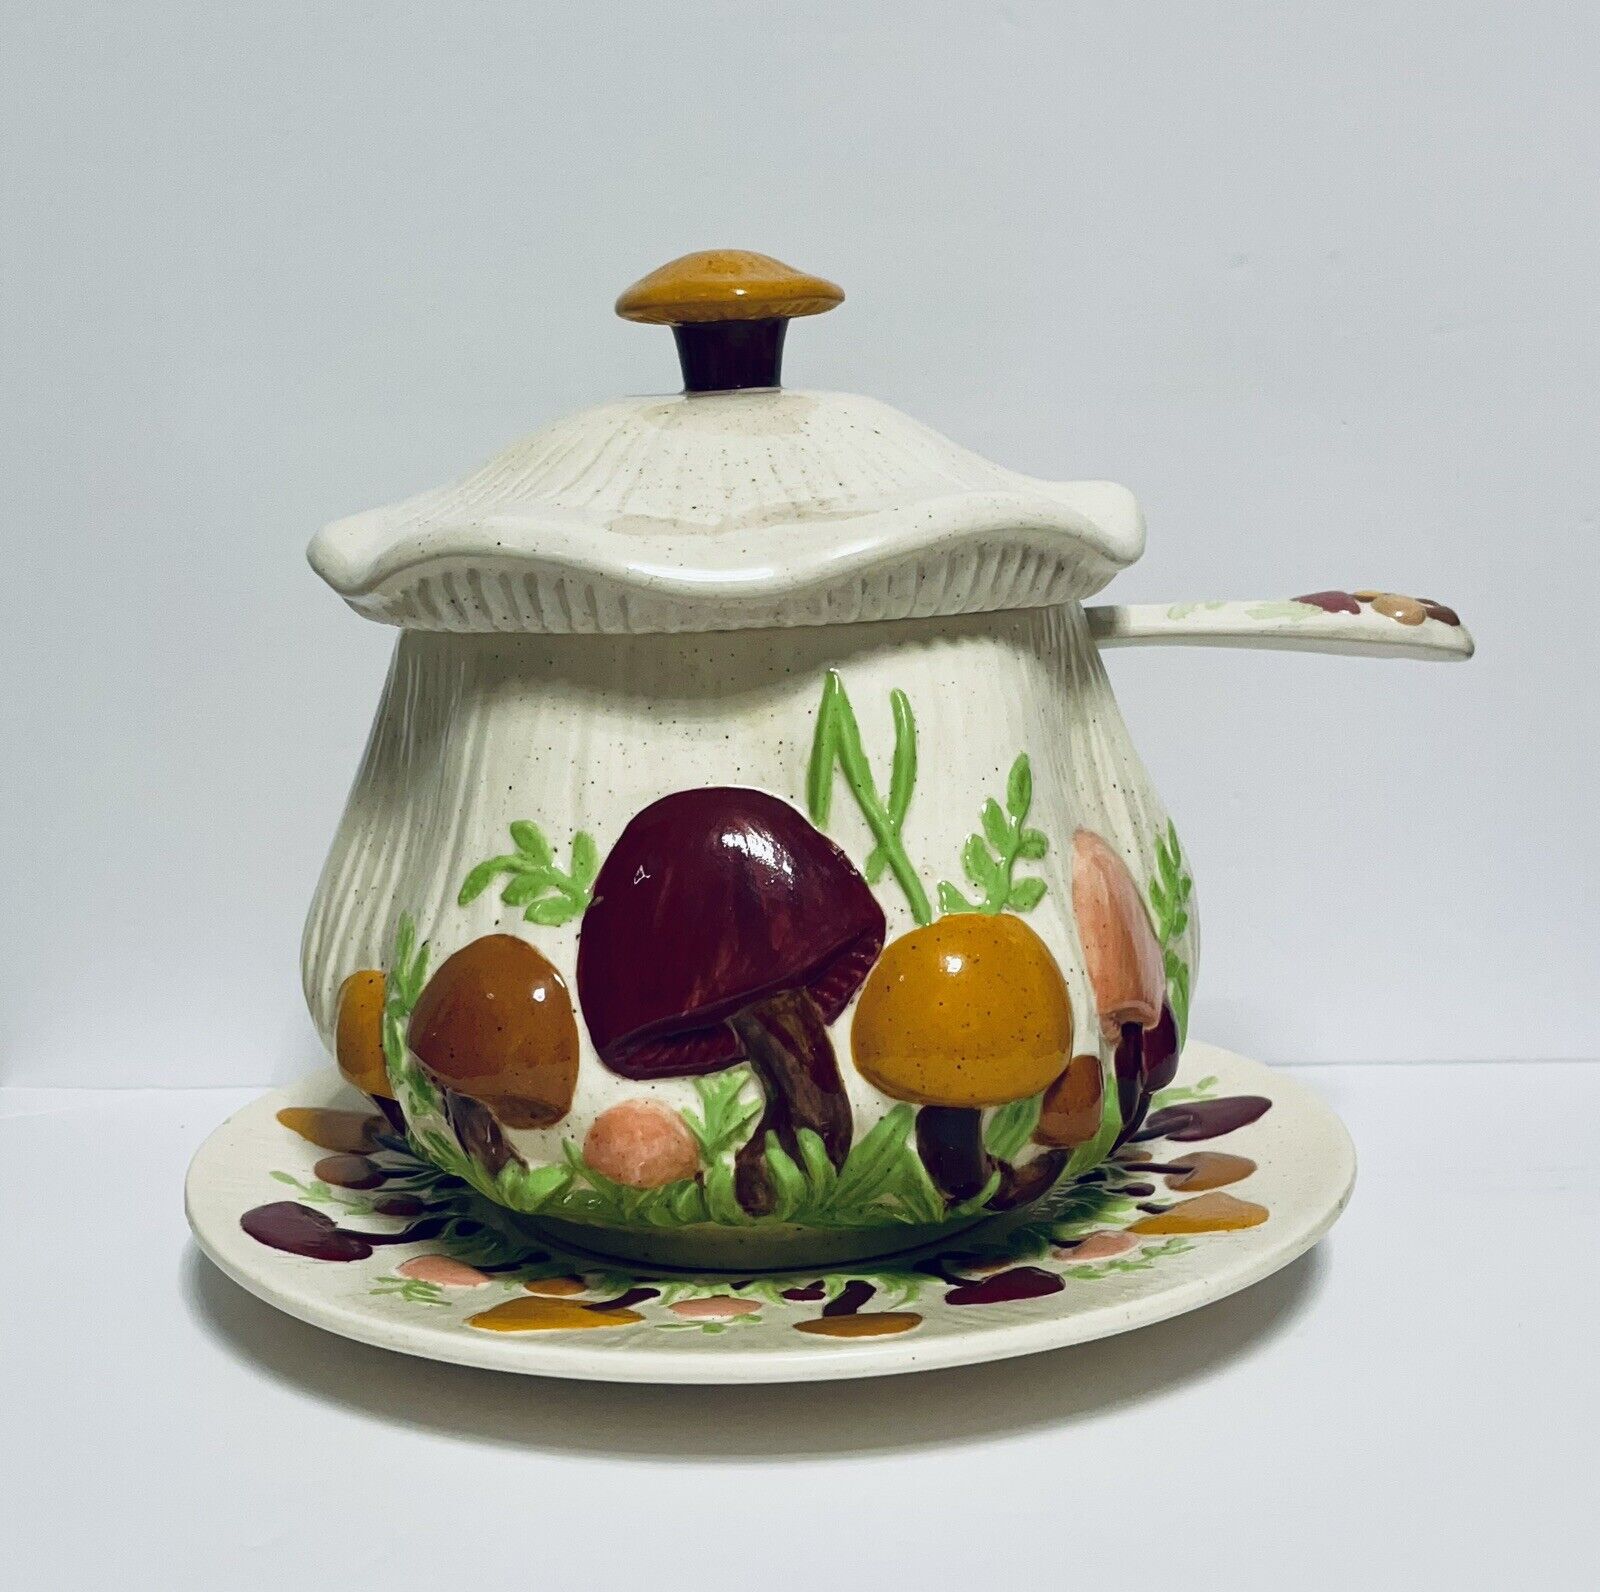 VTG Arnel's Ceramic Mushroom Soup Tureen w/Lid  Ladle & Underplate Earth Tones